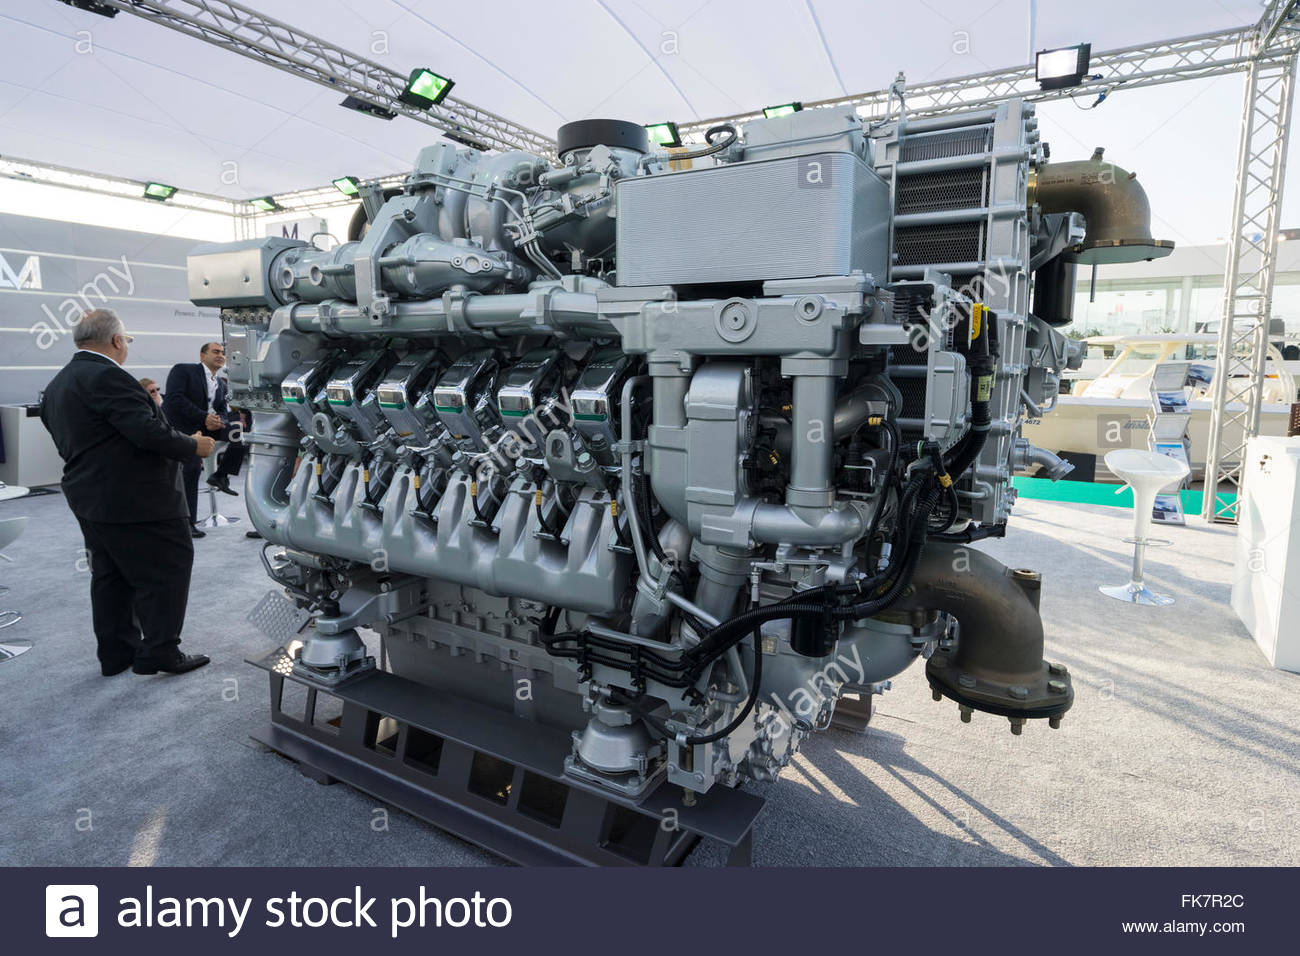 large mtu marine diesel engines